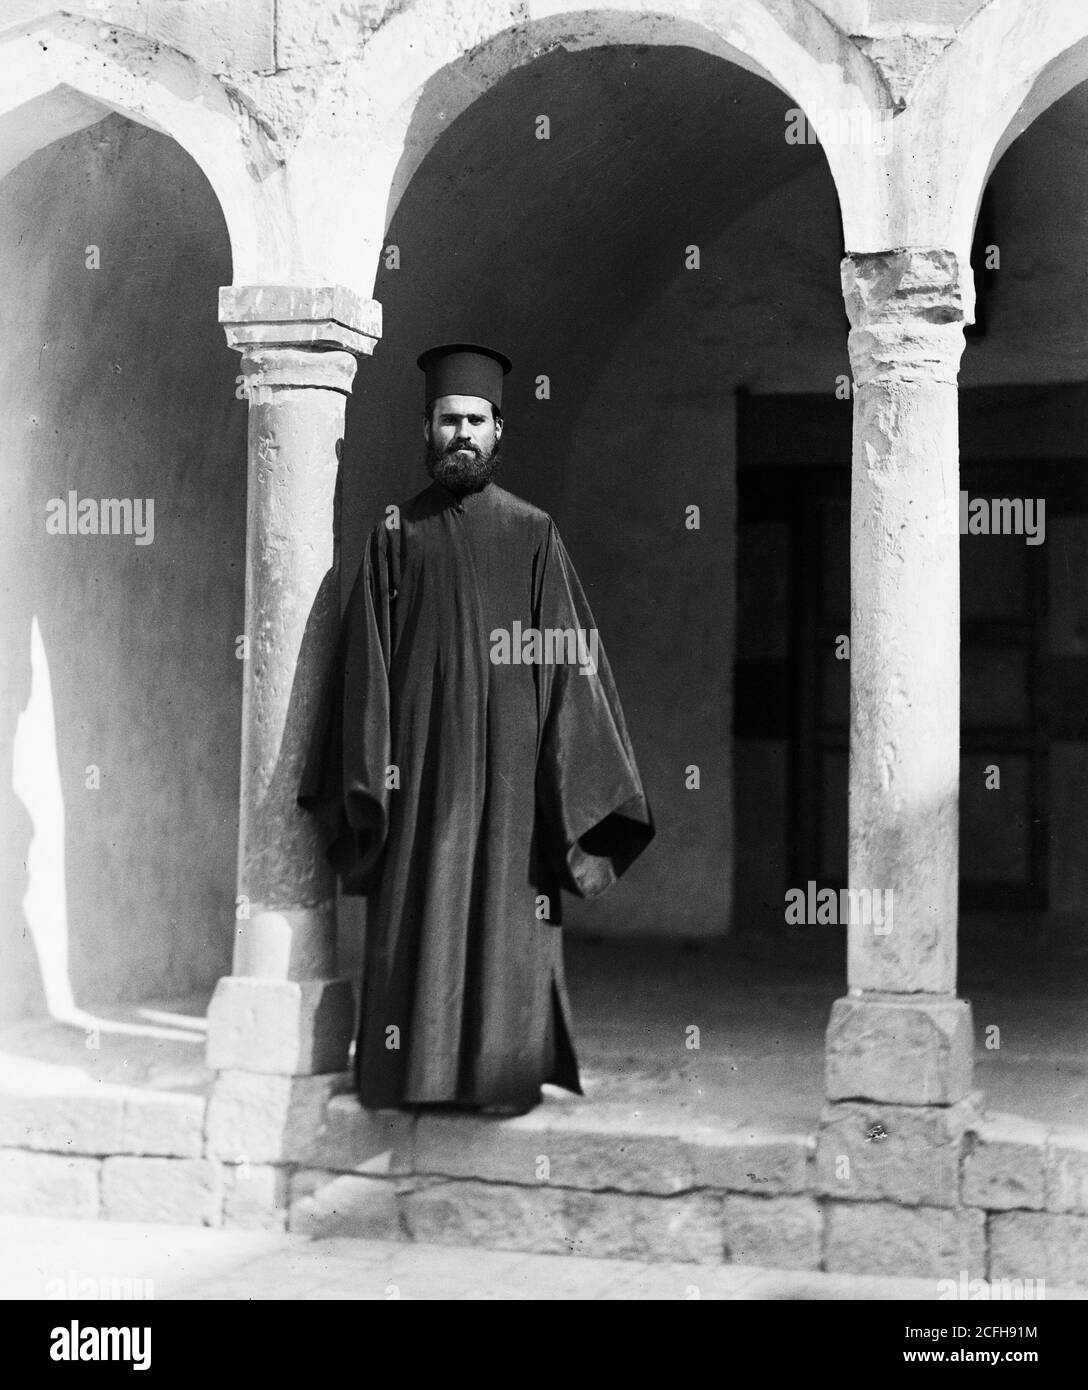 Bildunterschrift: Krak des Chevaliers & Kloster St. George. Kloster St. George. Priest - Ort: Syrien ca. 1936 Stockfoto